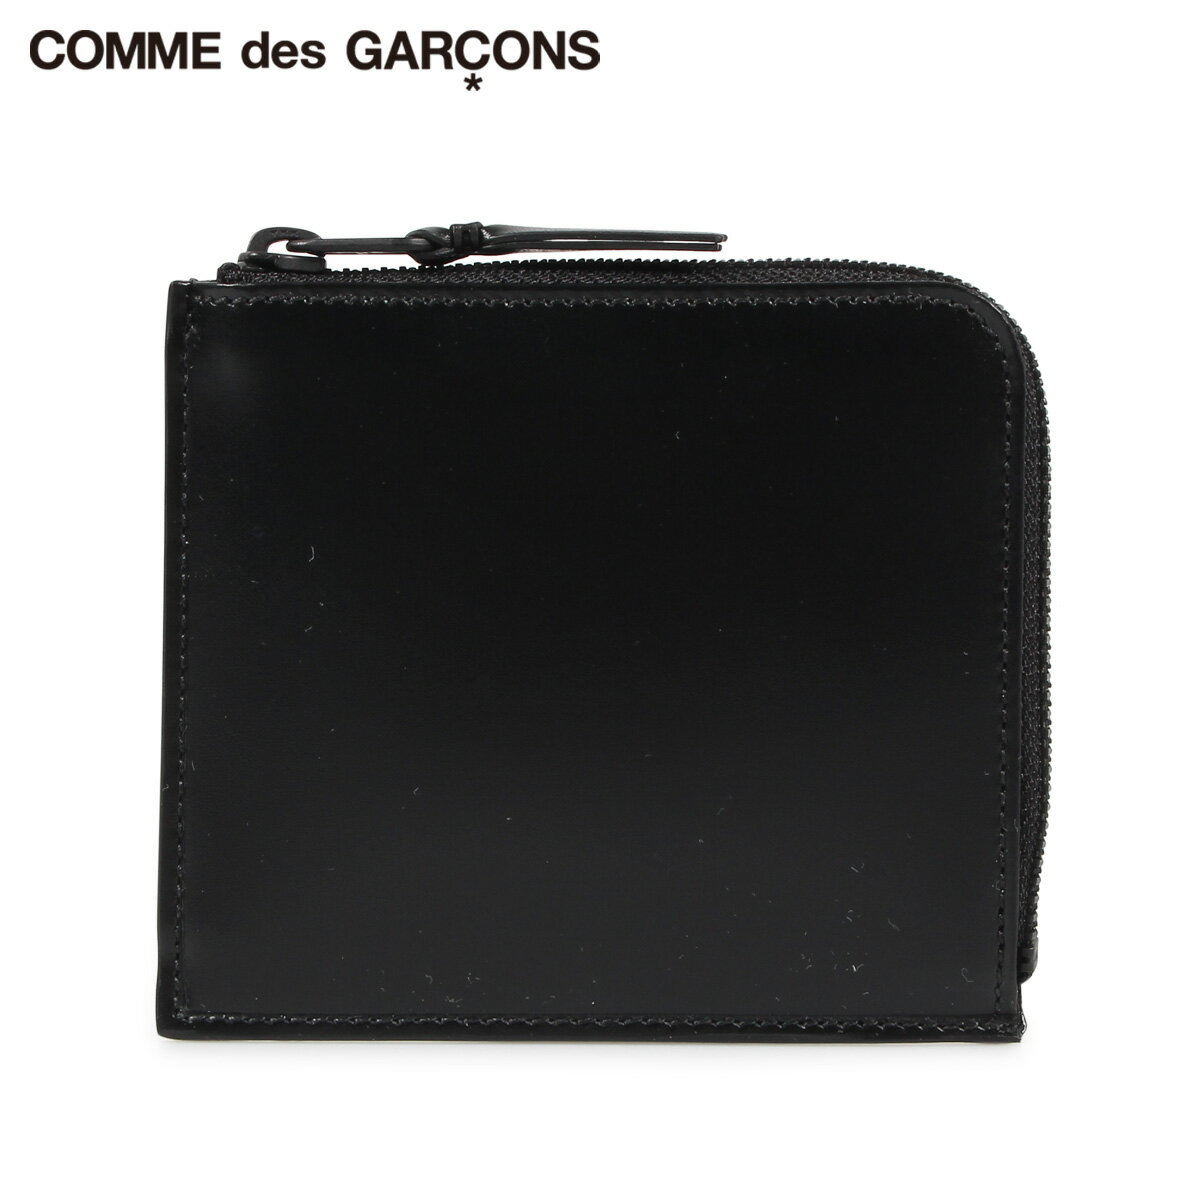 コムデギャルソン COMME des GARCONS 財布 ミニ財布 メンズ レディース L字ファスナー 本革 VERY BLACK WALLET ブラック 黒 SA3100VB